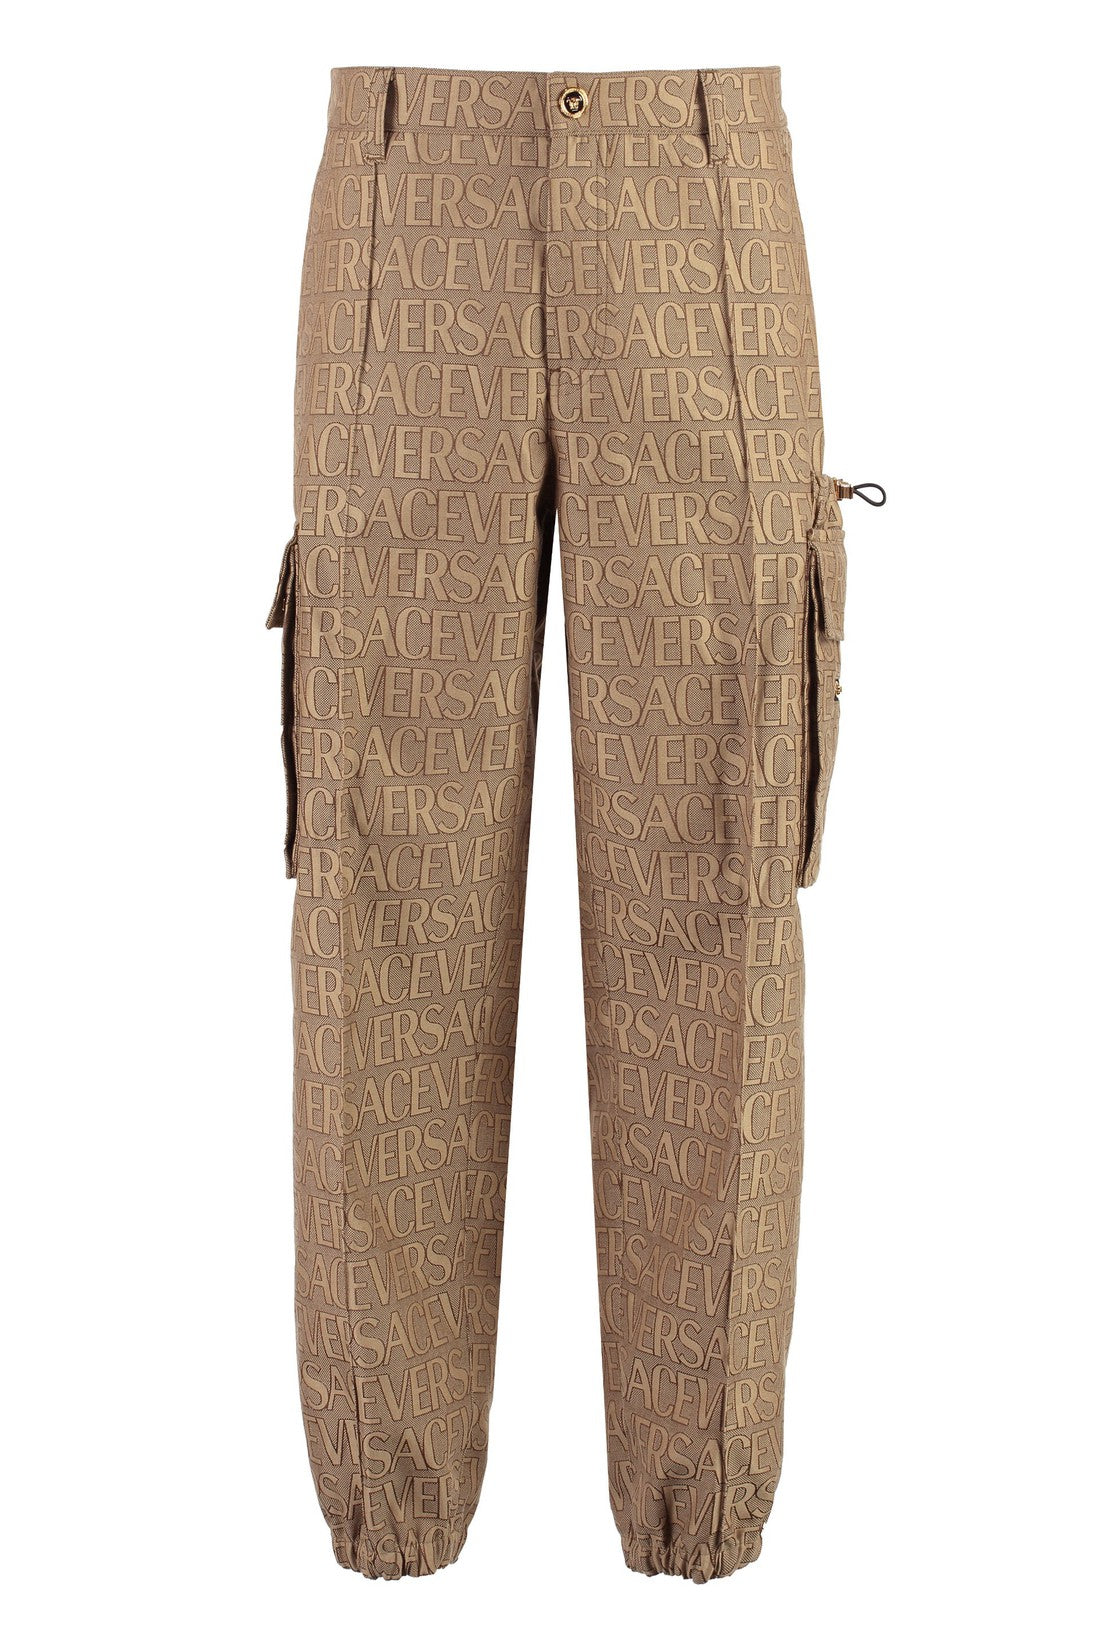 Versace-OUTLET-SALE-Cotton blend cargo-trousers-ARCHIVIST